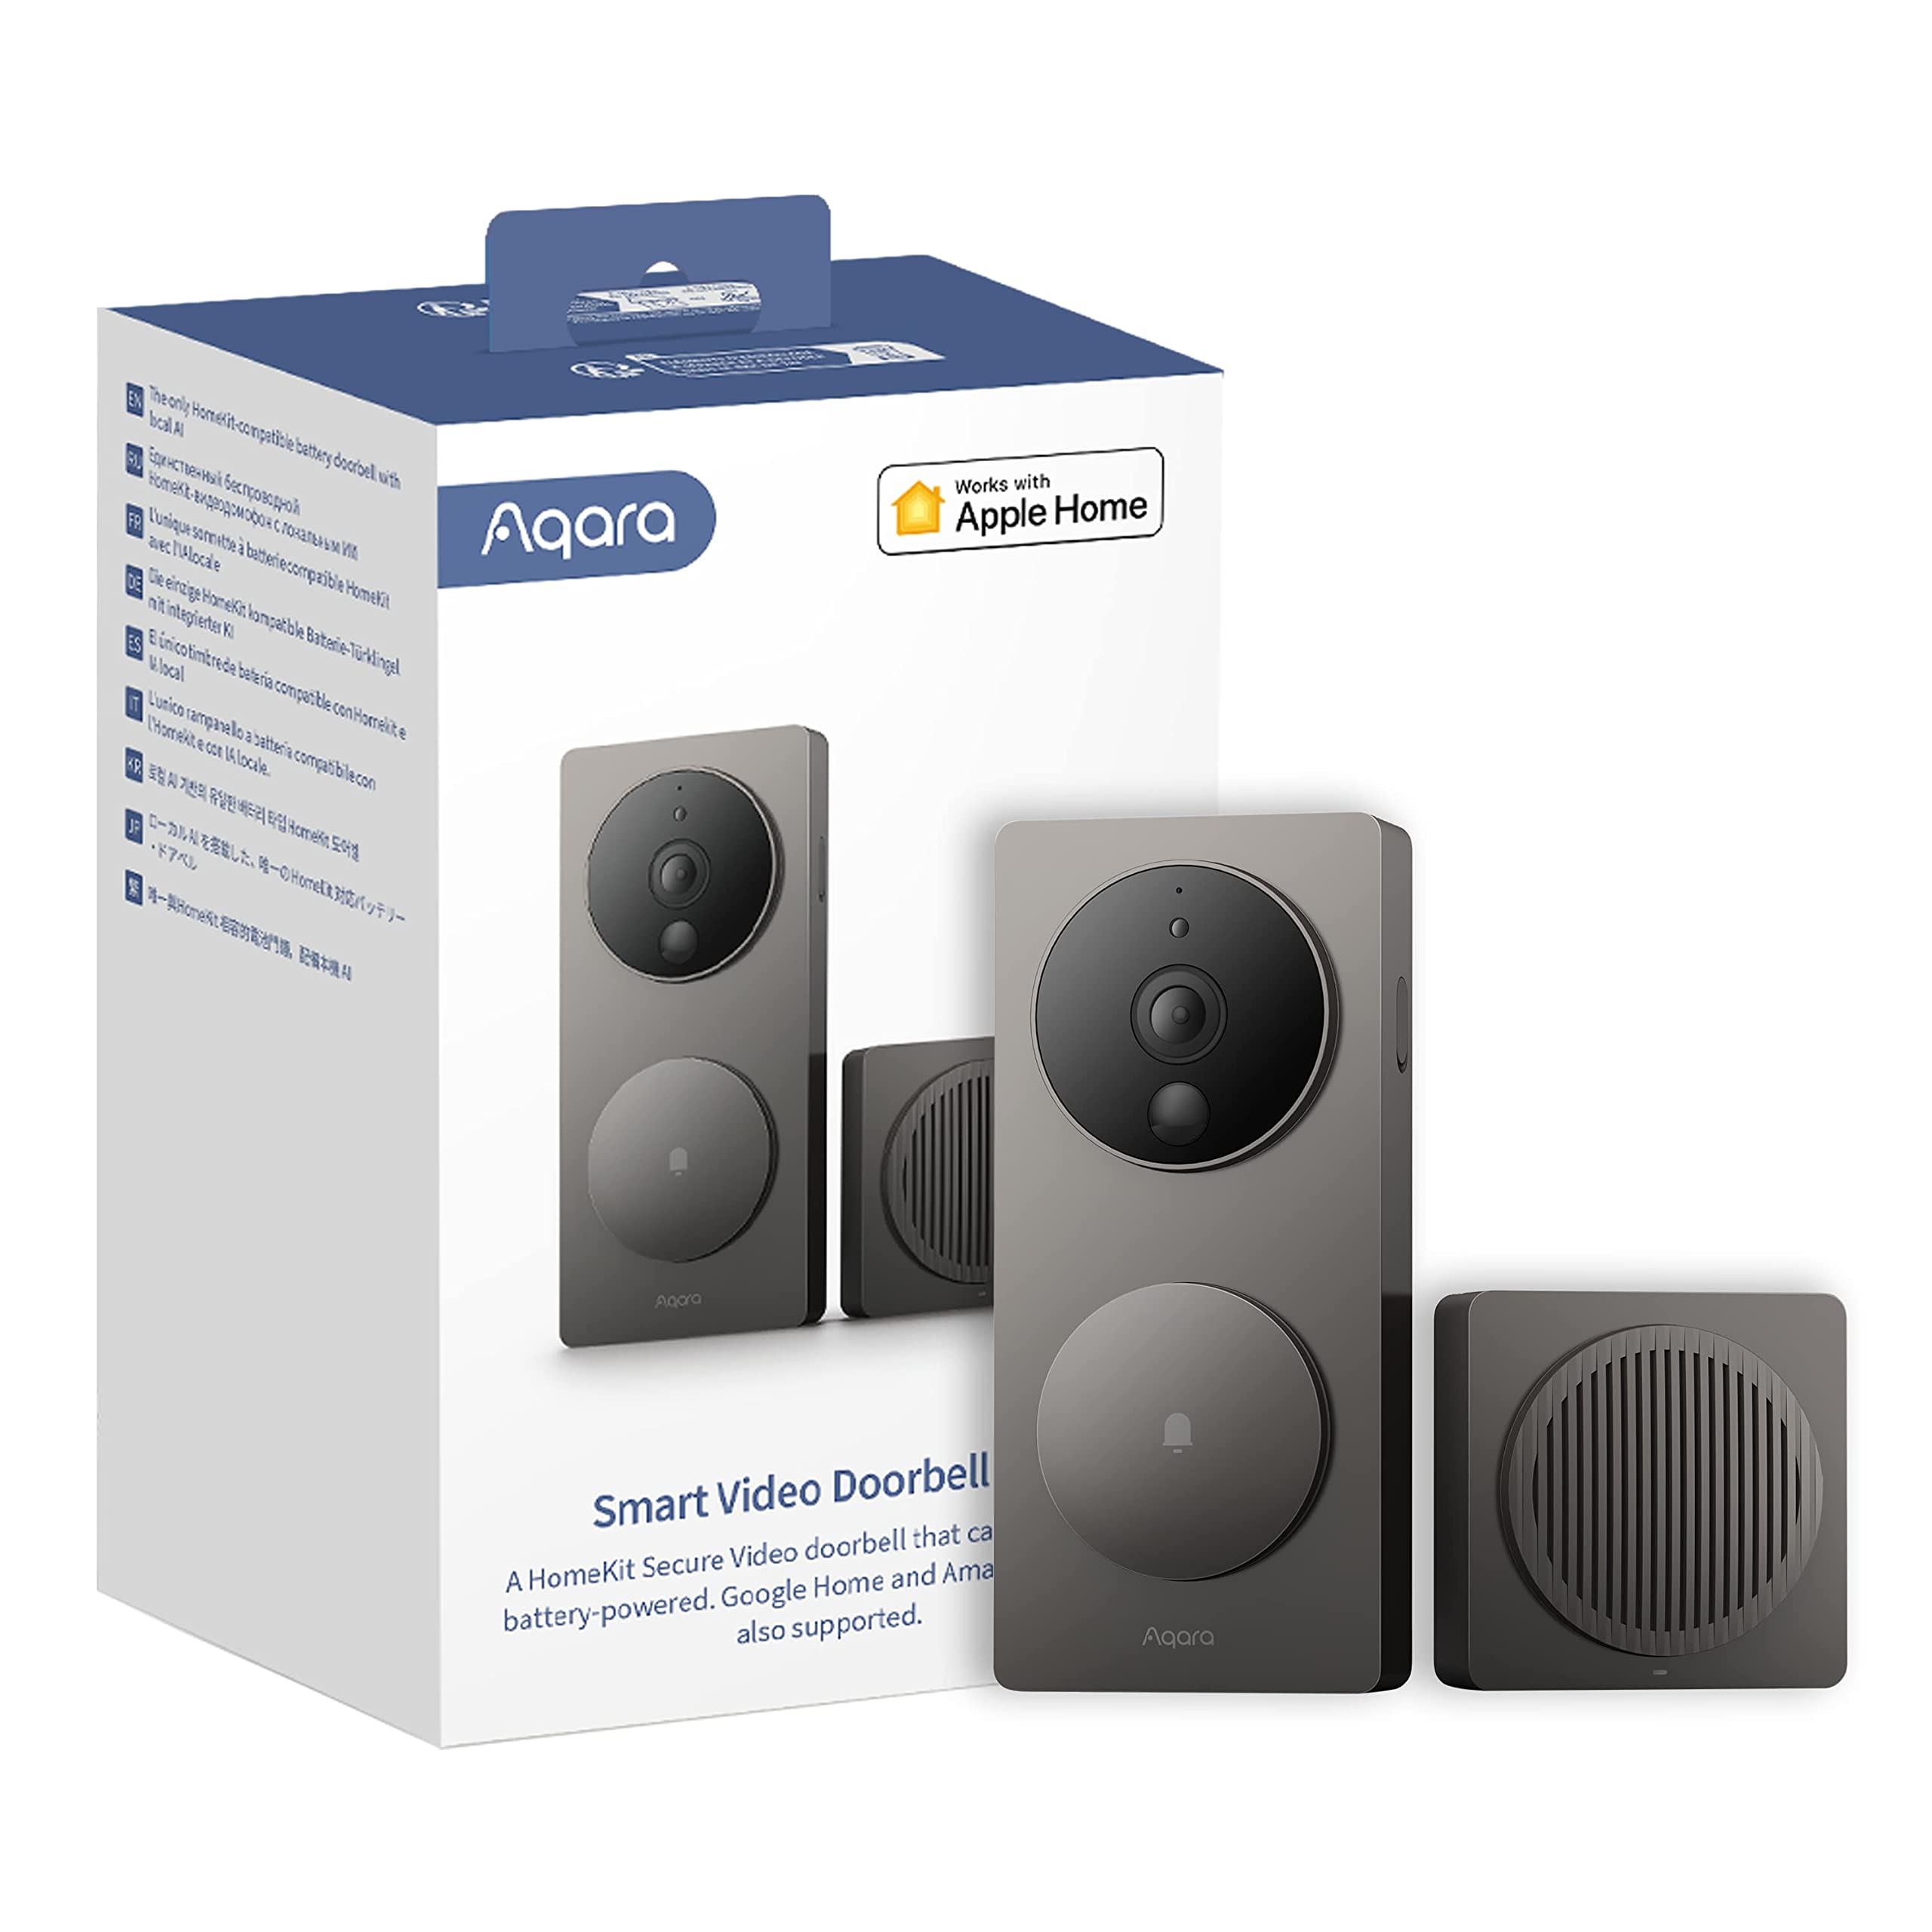 Is Doorbell Camera Compatible With Apple Homekit